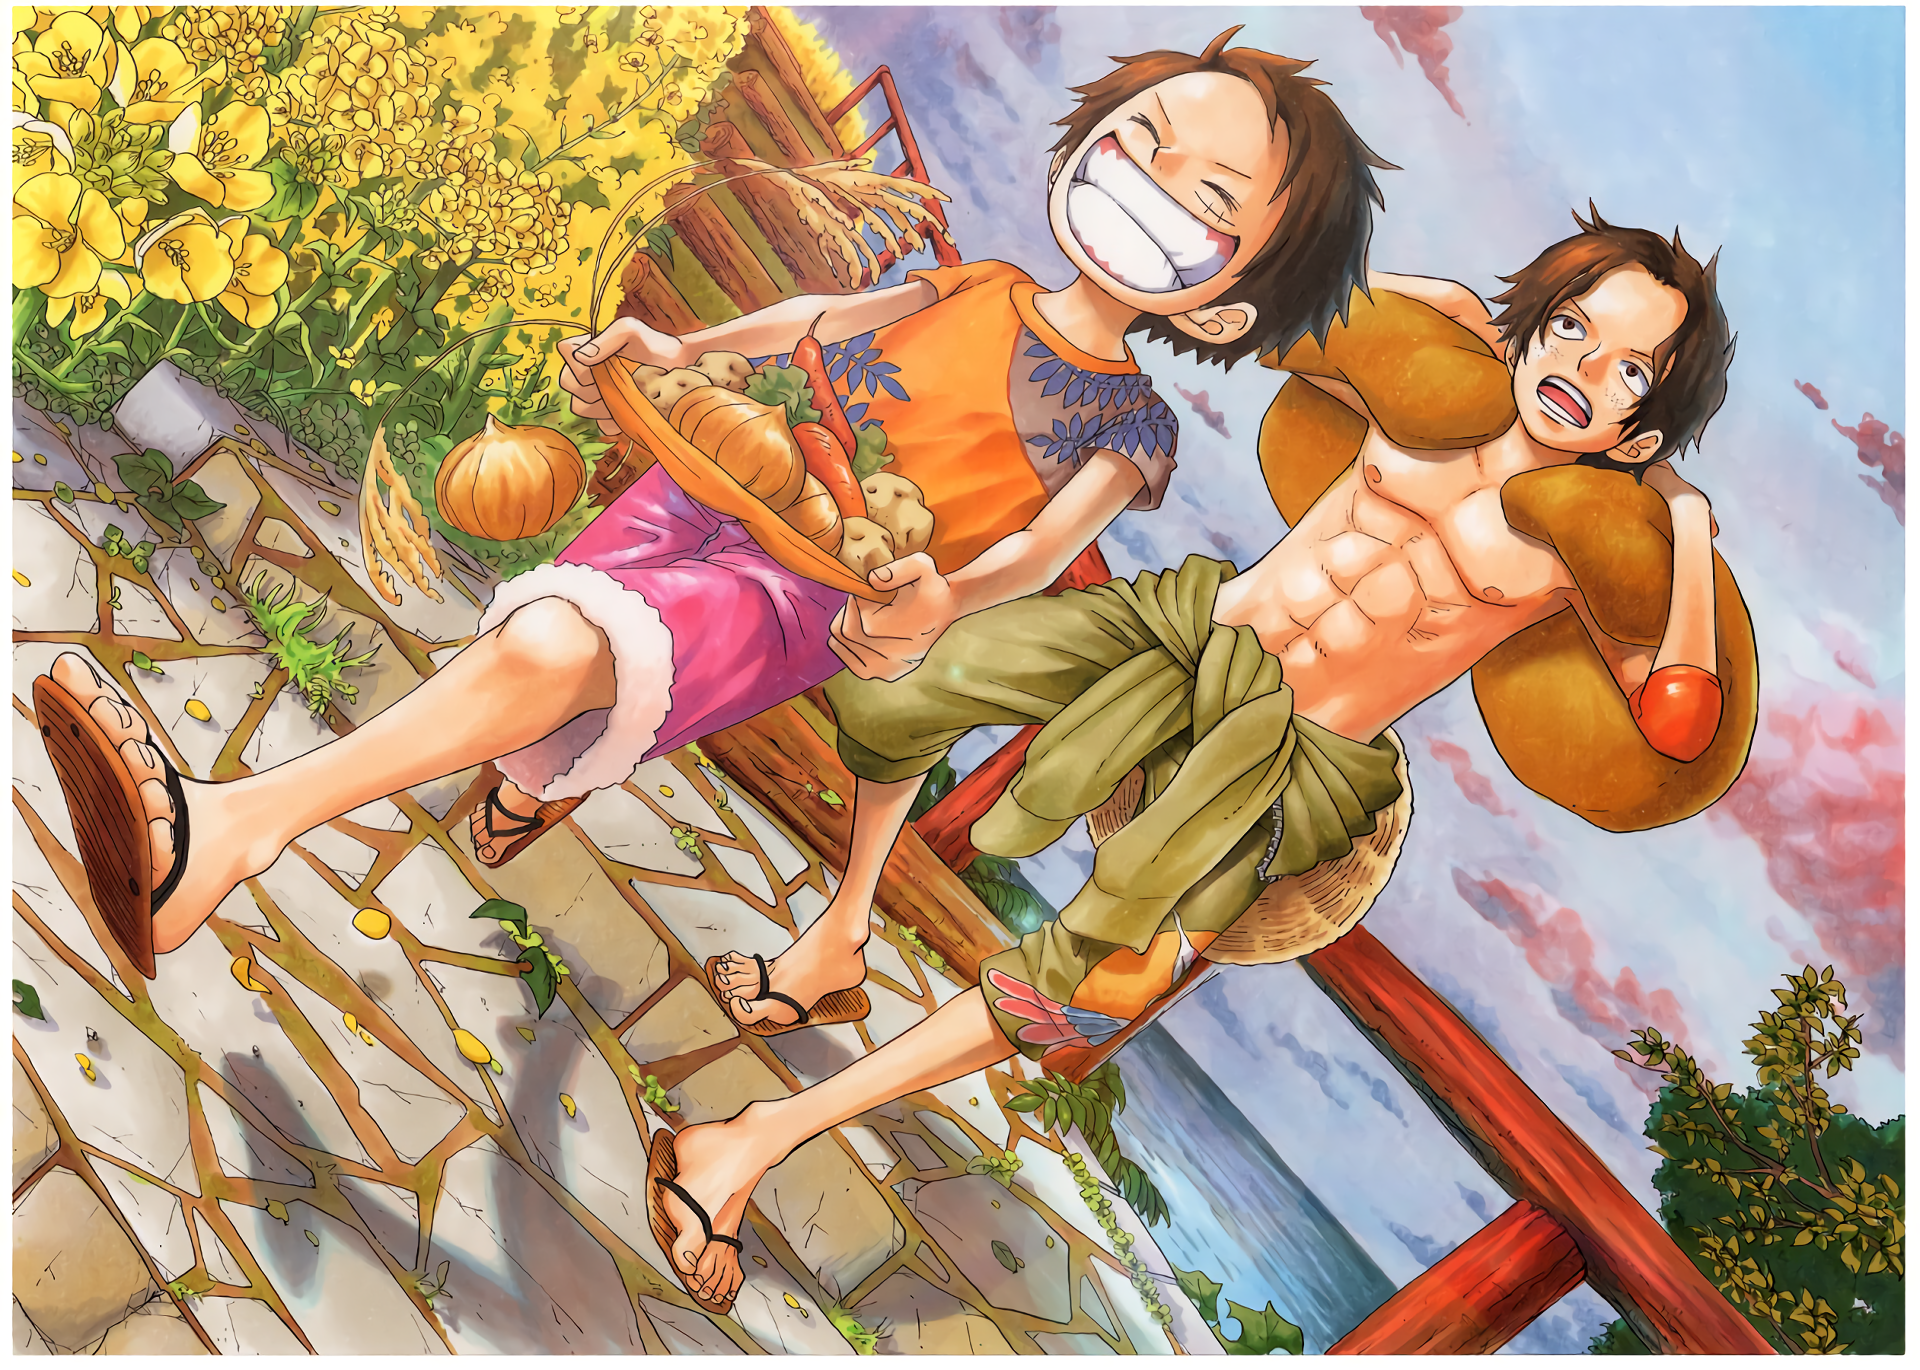 One Piece là một trong những bộ phim Anime nổi tiếng nhất mọi thời đại, với những tình tiết hấp dẫn và những nhân vật đầy sức sống. Hãy xem những hình nền One Piece lấy cảm hứng từ bộ phim này để tăng thêm sự động lực cho ngày mới.